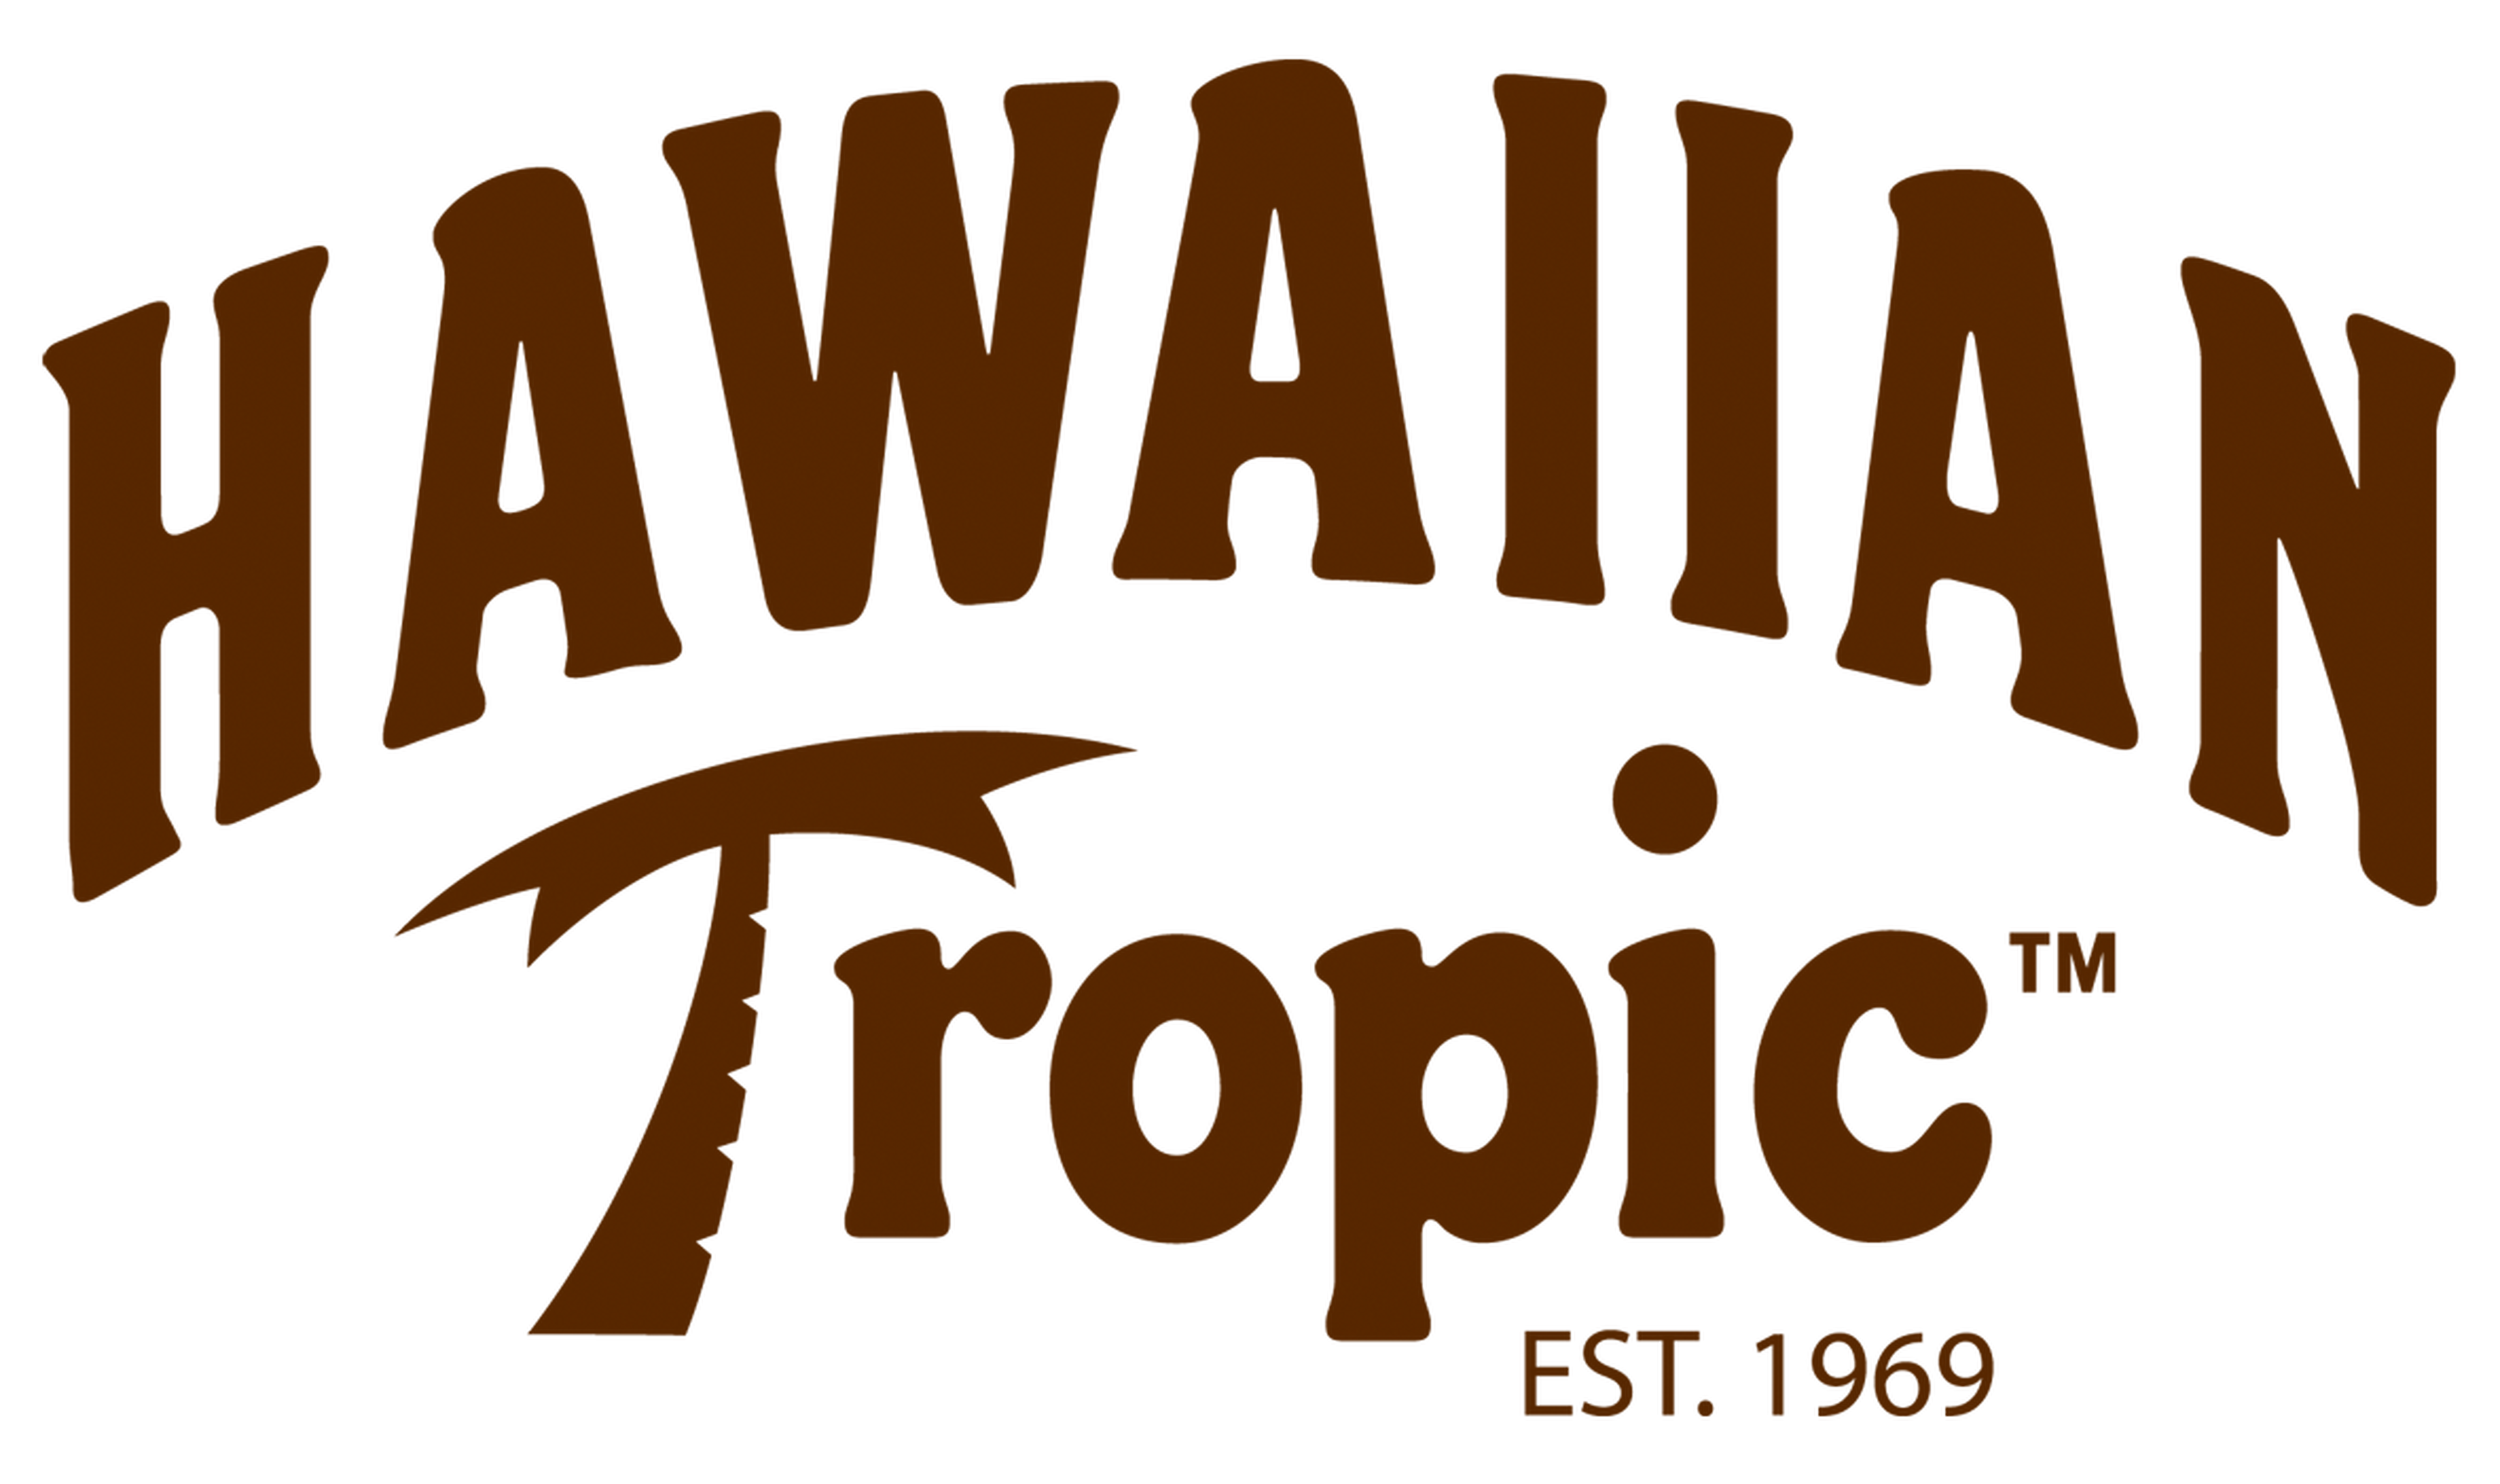 Hawaiian Tropic logotype